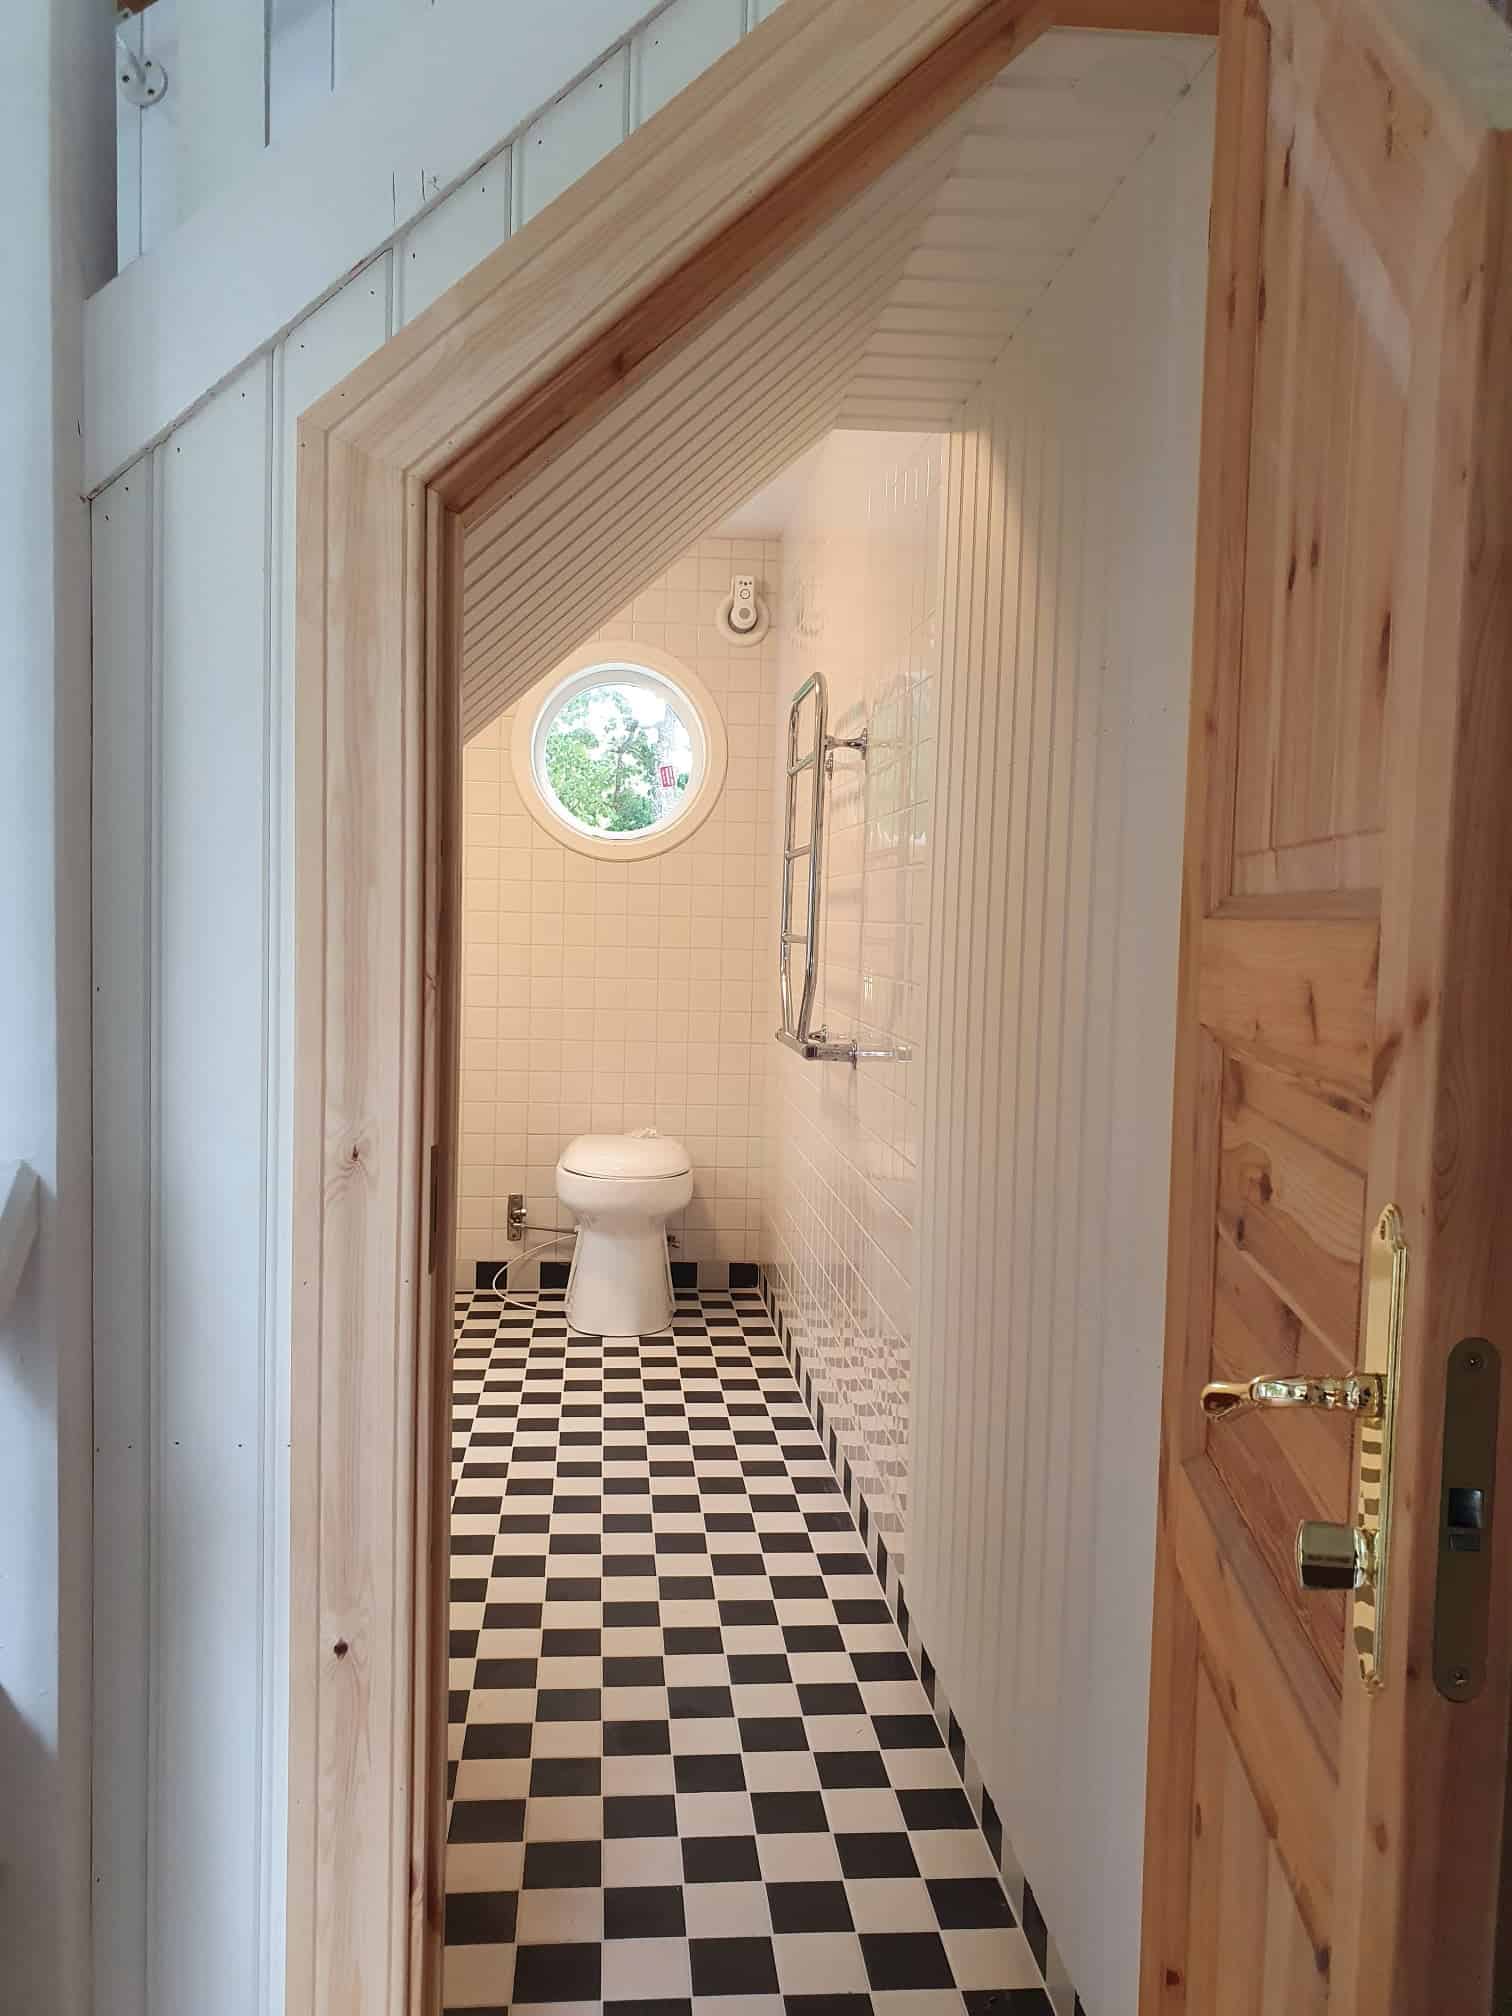 Referensjobb "Välkommen in i denna specialdesignade ingång till badrummet." utfört av Top Tips AB